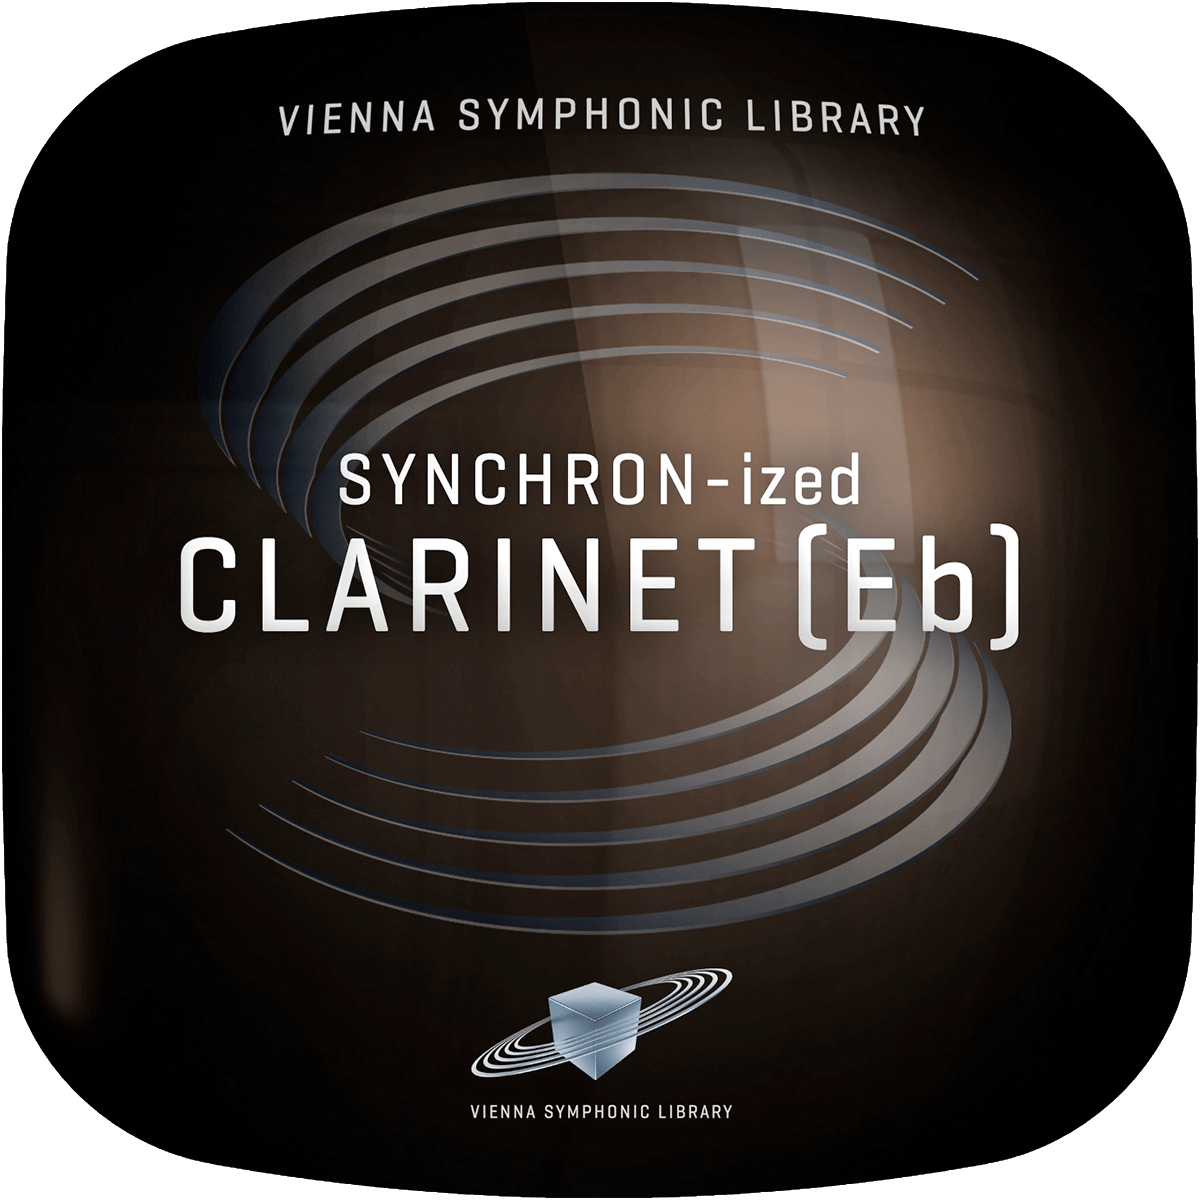 VSL Synchron-ized Clarinet (Eb)